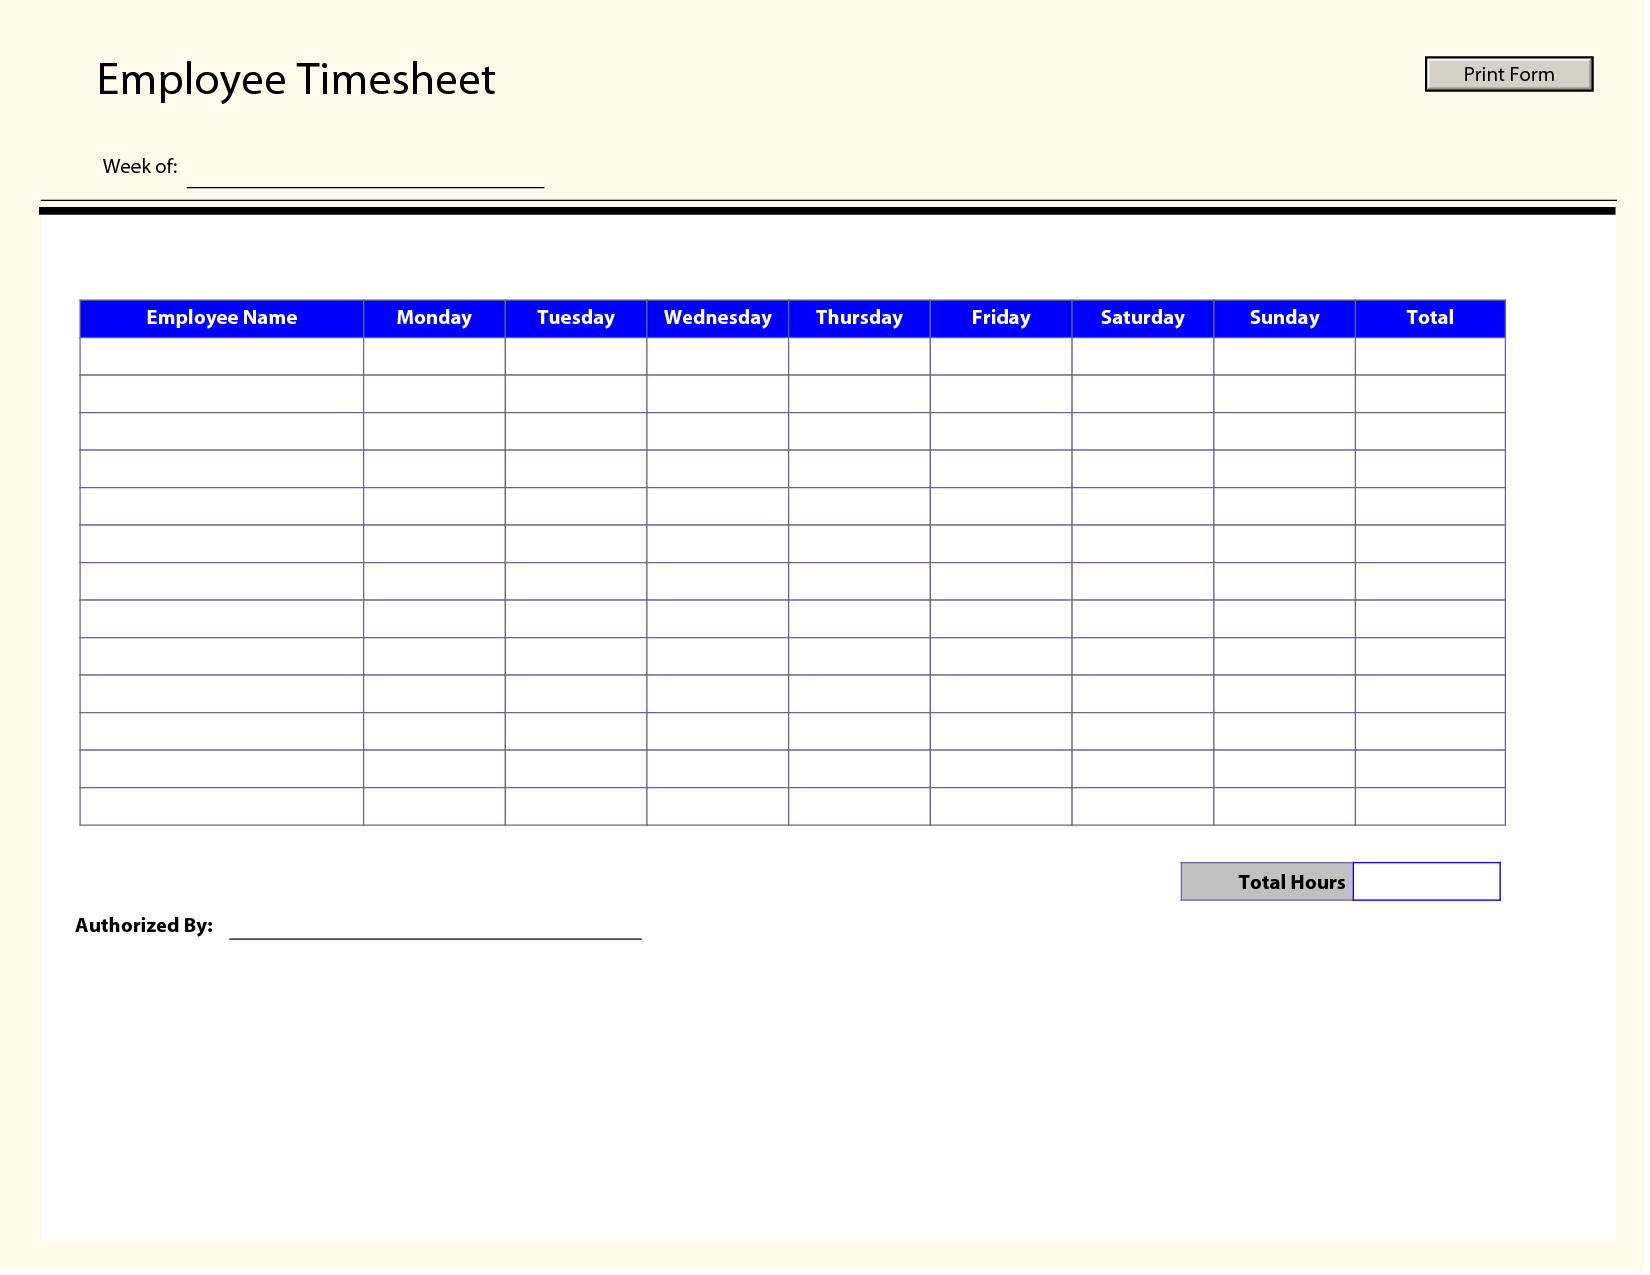 Printable Time Sheets | Free Printable Employee Timesheets Employee - Time Card Templates Free Printable